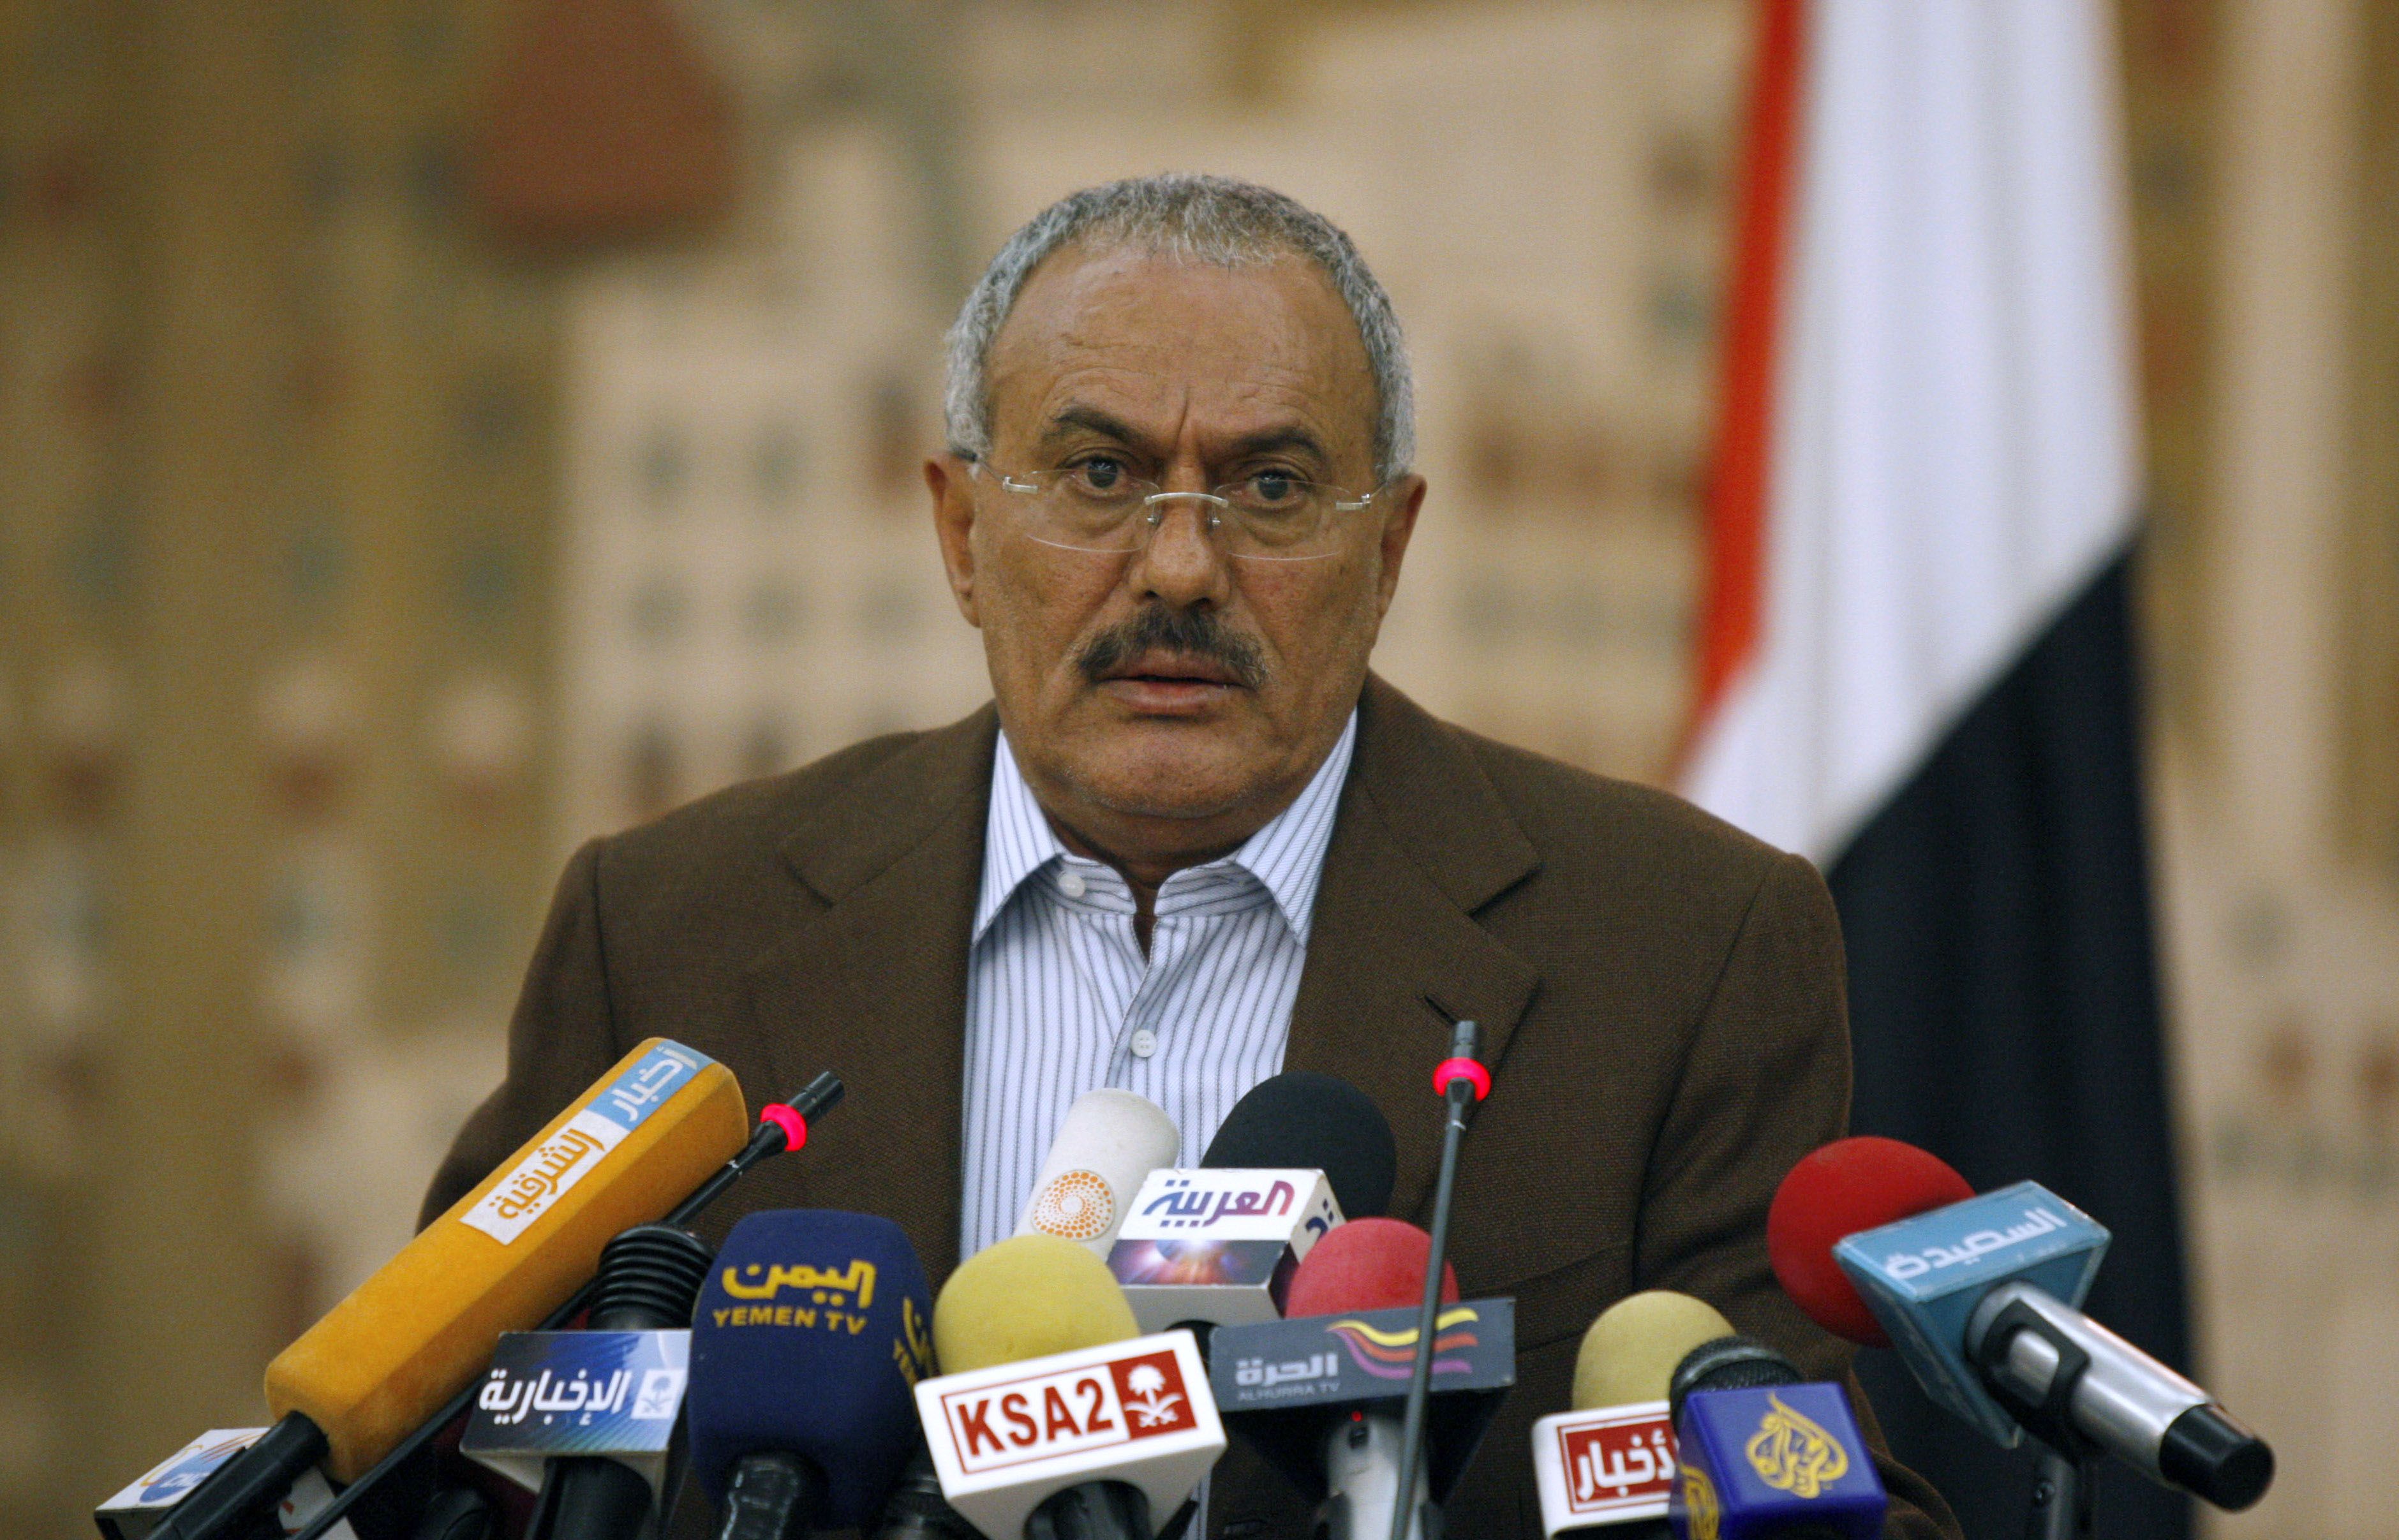 President, Revolution, Jemen, USA, Demonstration, Ali Abdullah Saleh, Avgår, Uppror